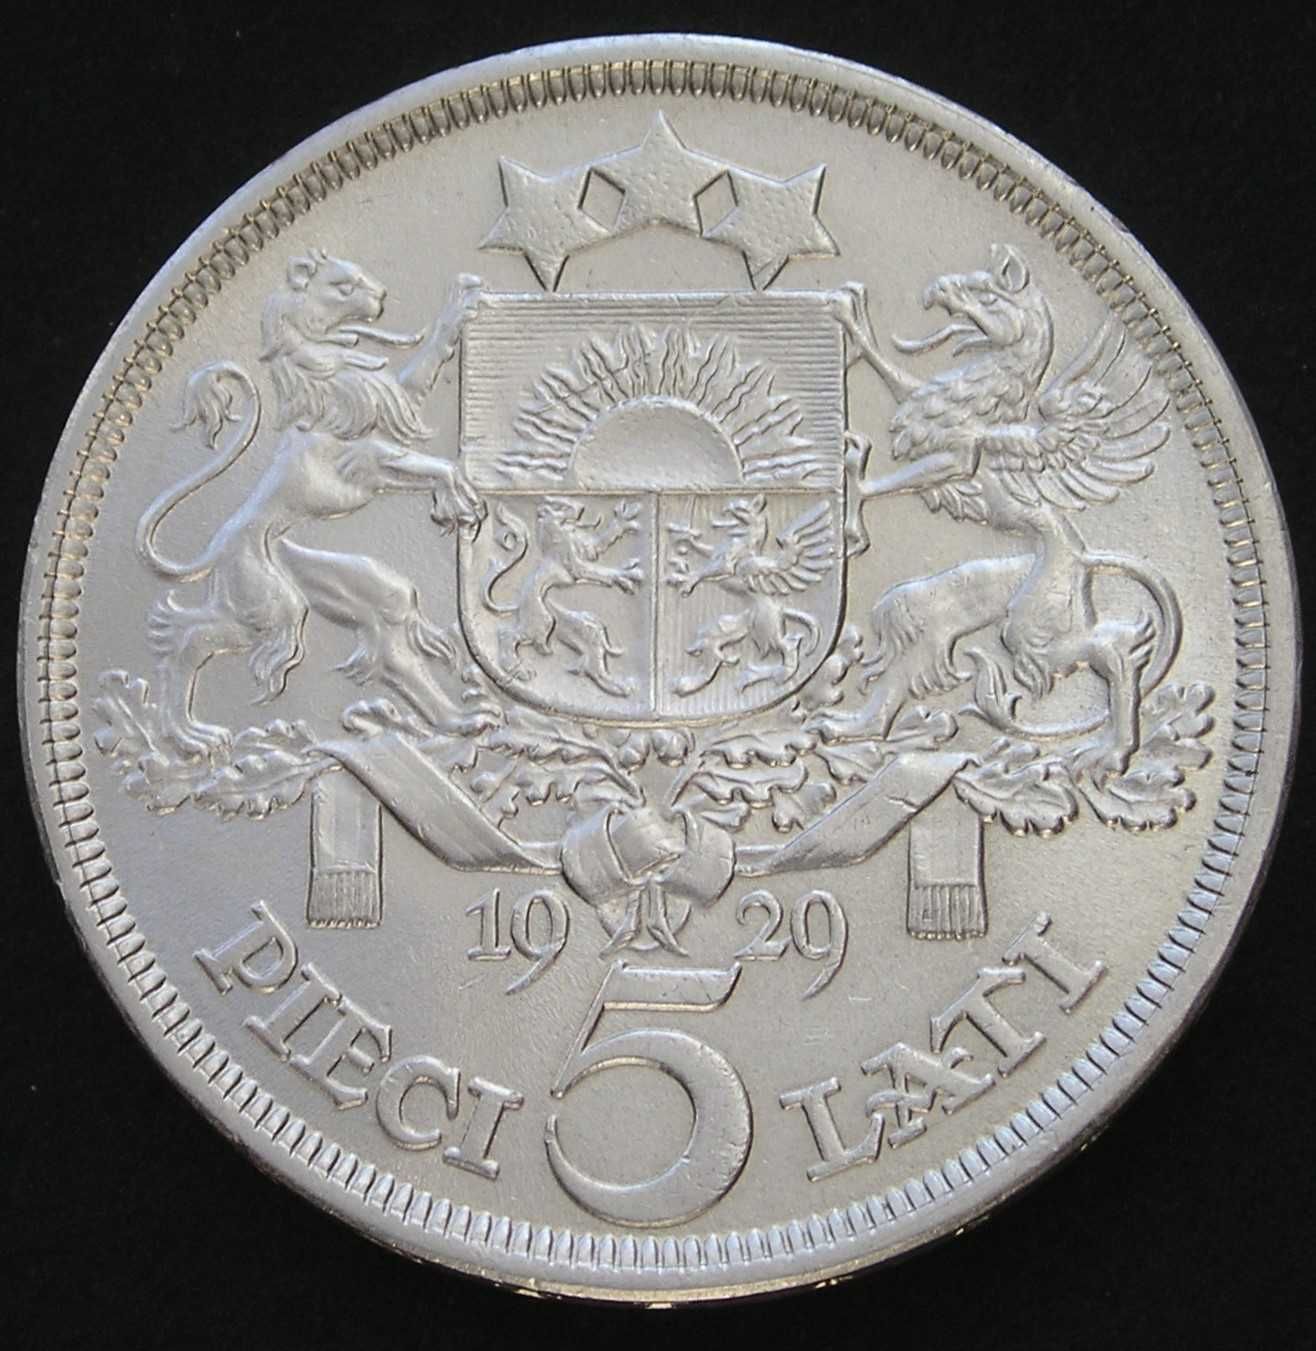 Łotwa 5 lati 1929 - srebro